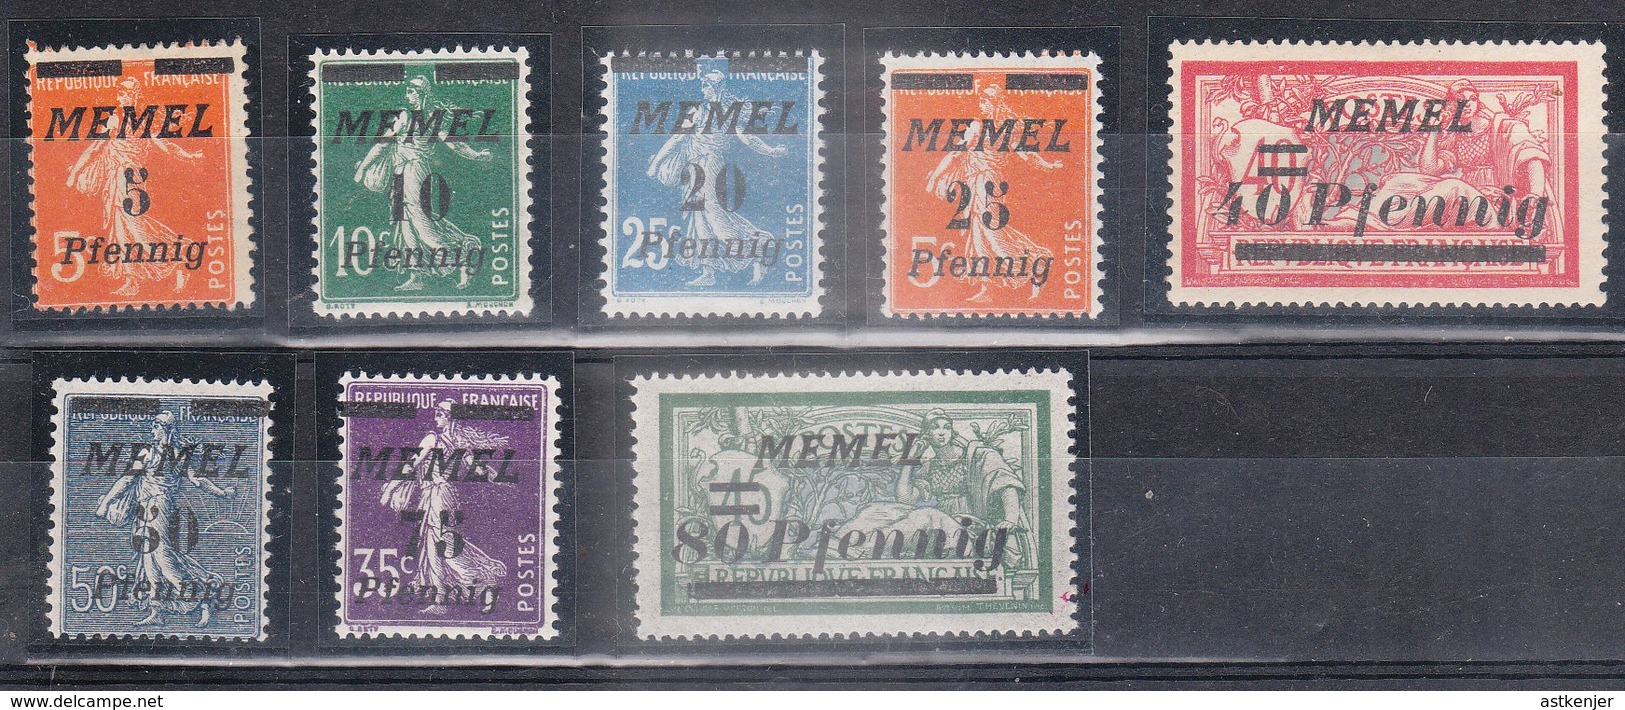 MEMEL - Petite Collection De 8 Timbres (année 1922)  - TOP AFFAIRE - Ungebraucht